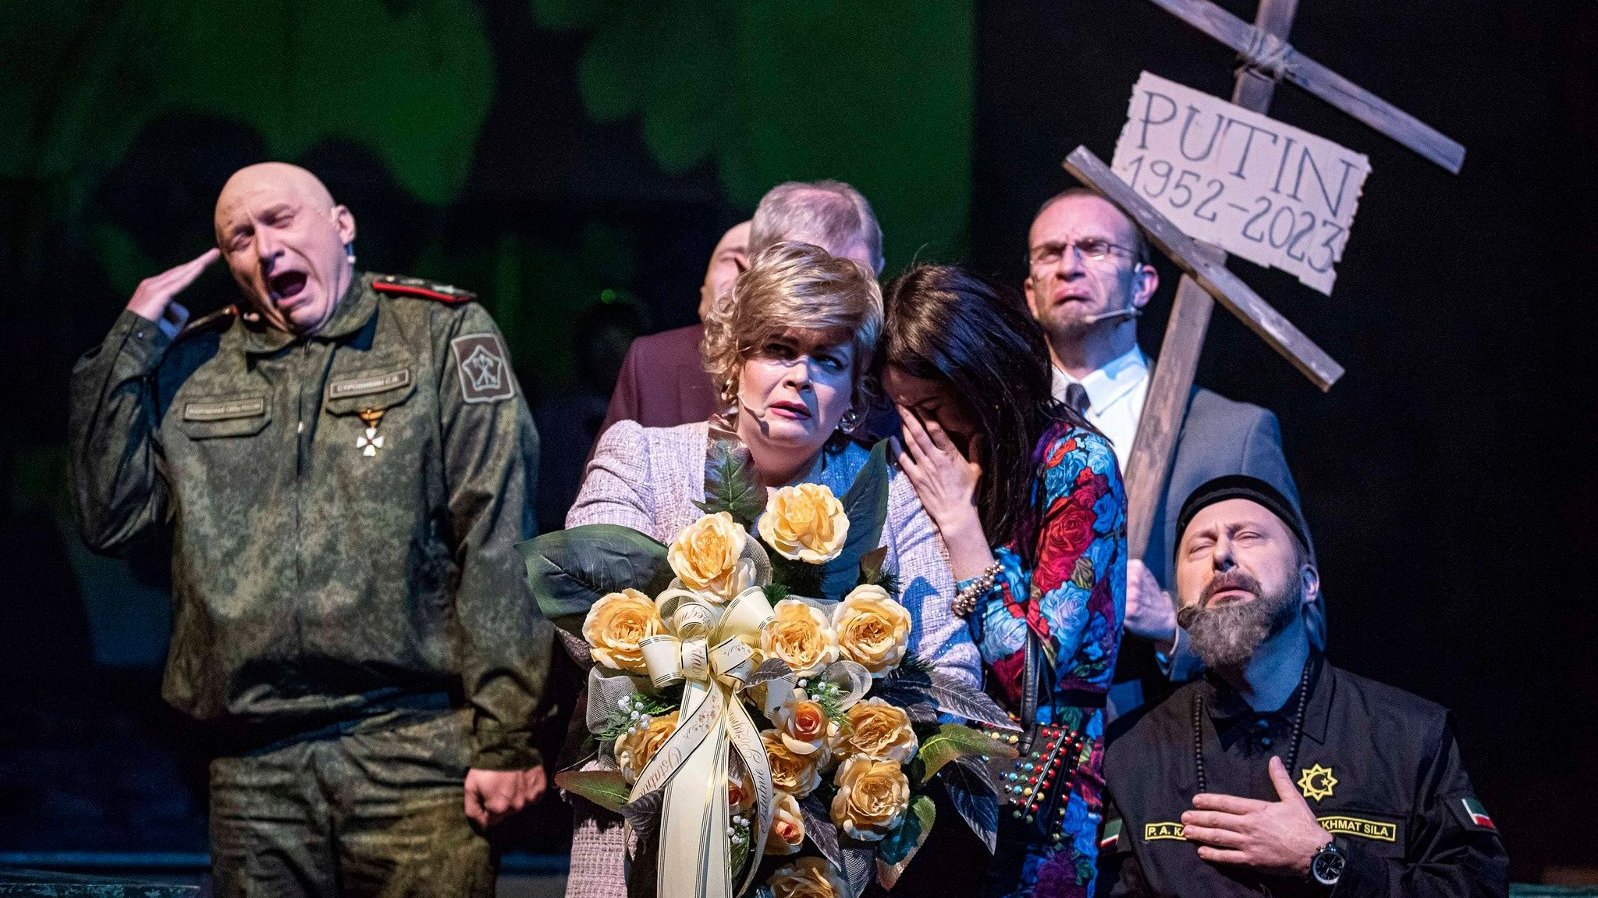 Zdjęcie przedstawia płaczących i zmartwionych ludzi. Jeden z mężczyzn trzyma drewniany krzyż z tabliczką z napisem "Putin 1952-2023".